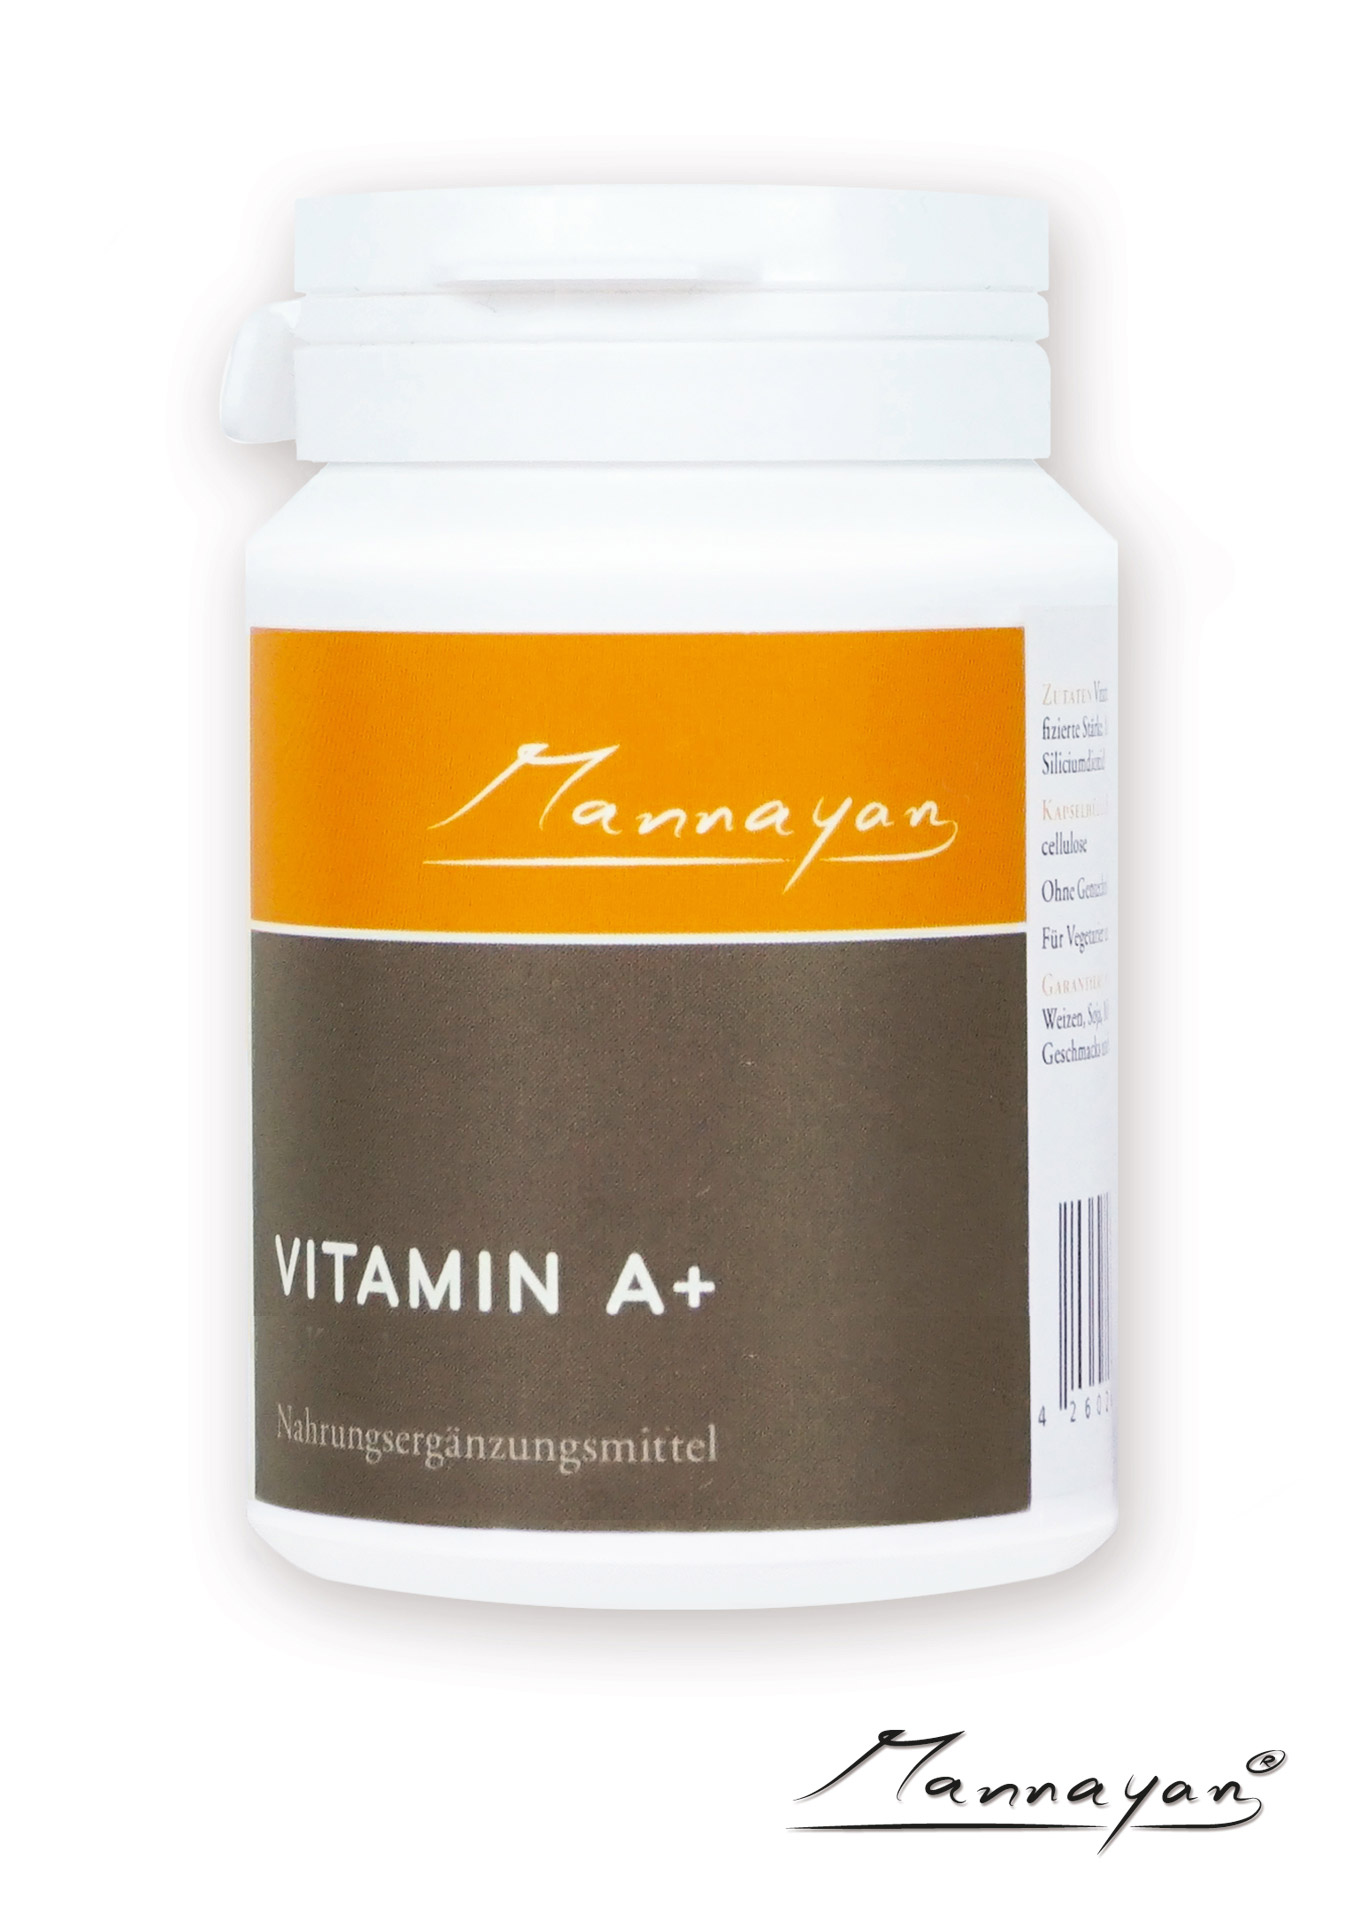 Vitamin A+ von Mannayan